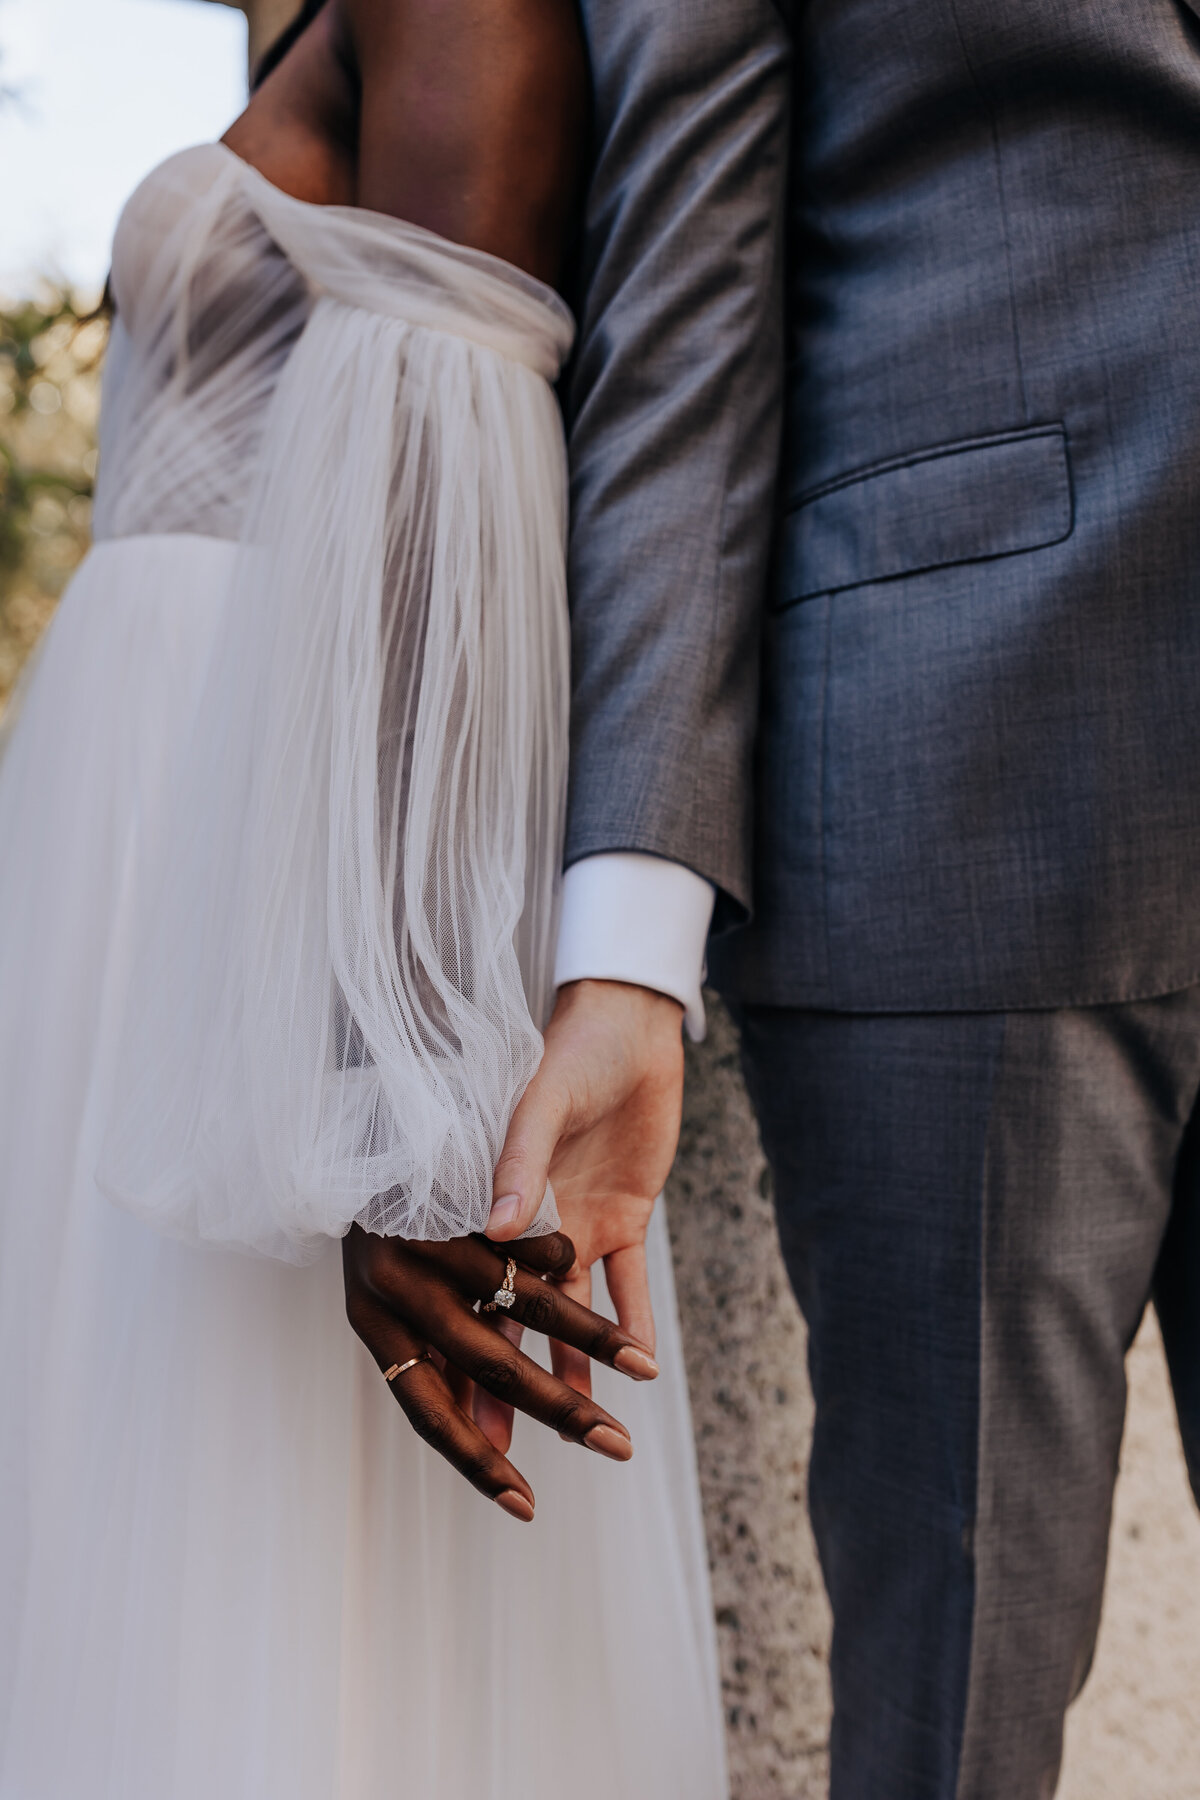 Destination elopement photographer captures couple holding hands